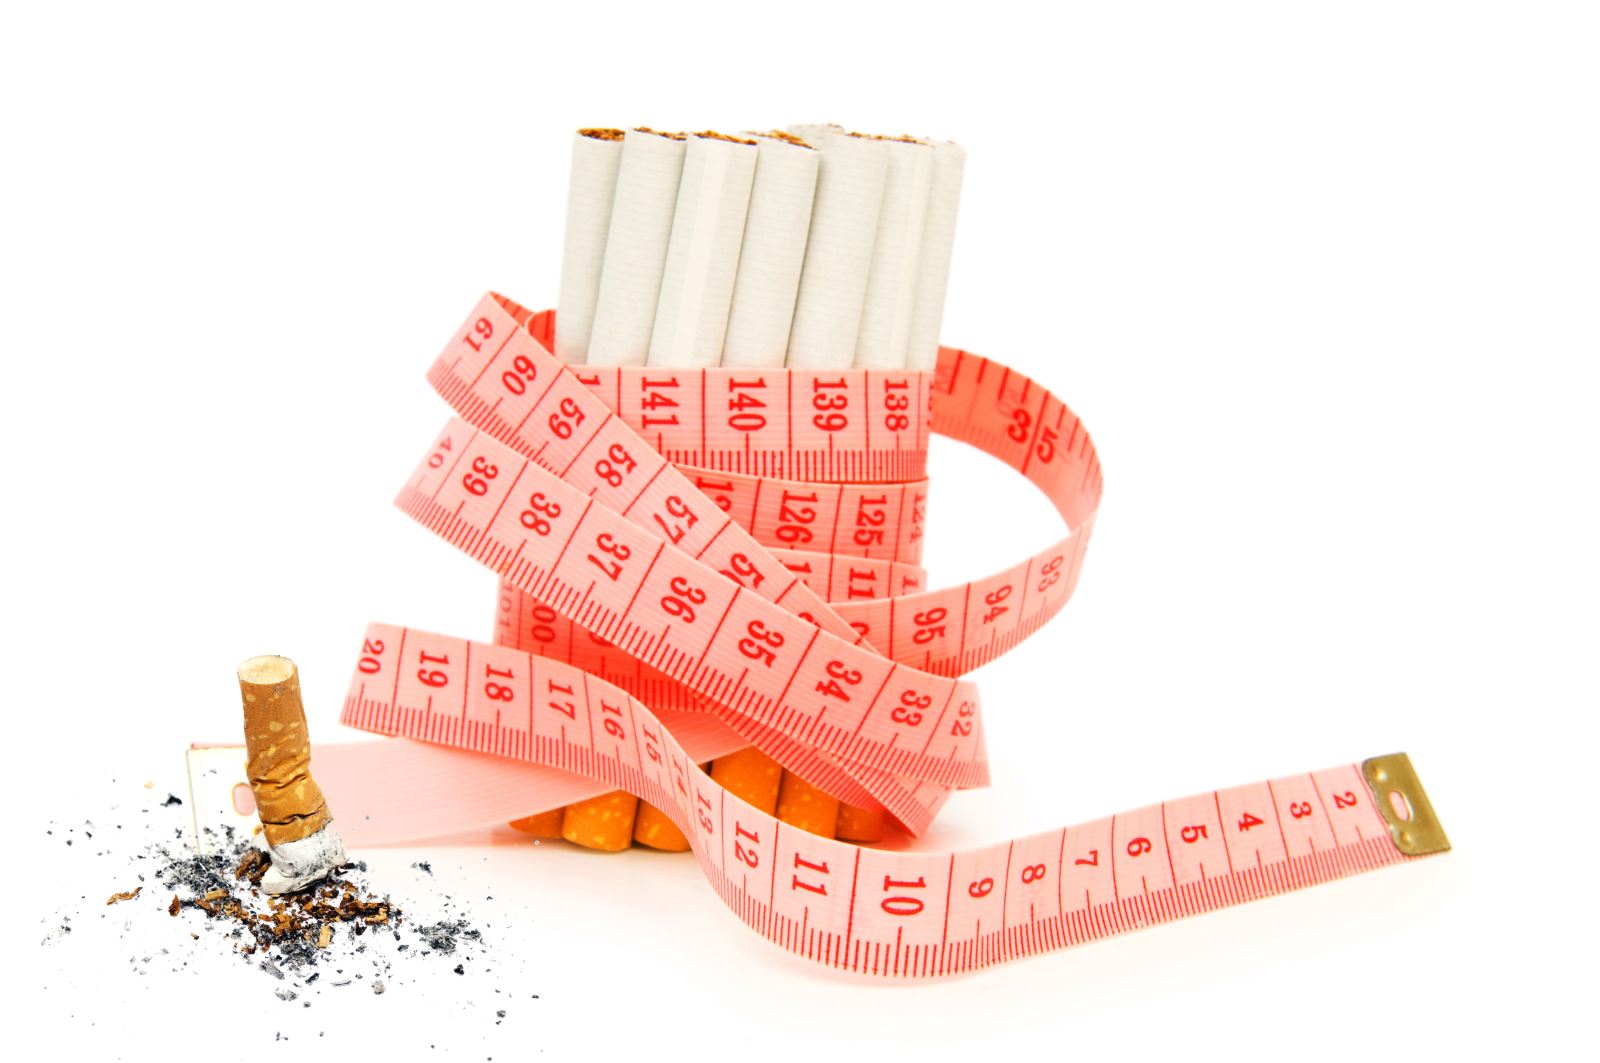 Tăng cân trong cai thuốc lá thường gặp khá nhiều. Tùy vào từng người khác nhau mà mức độ tăng cân sẽ khác nhau